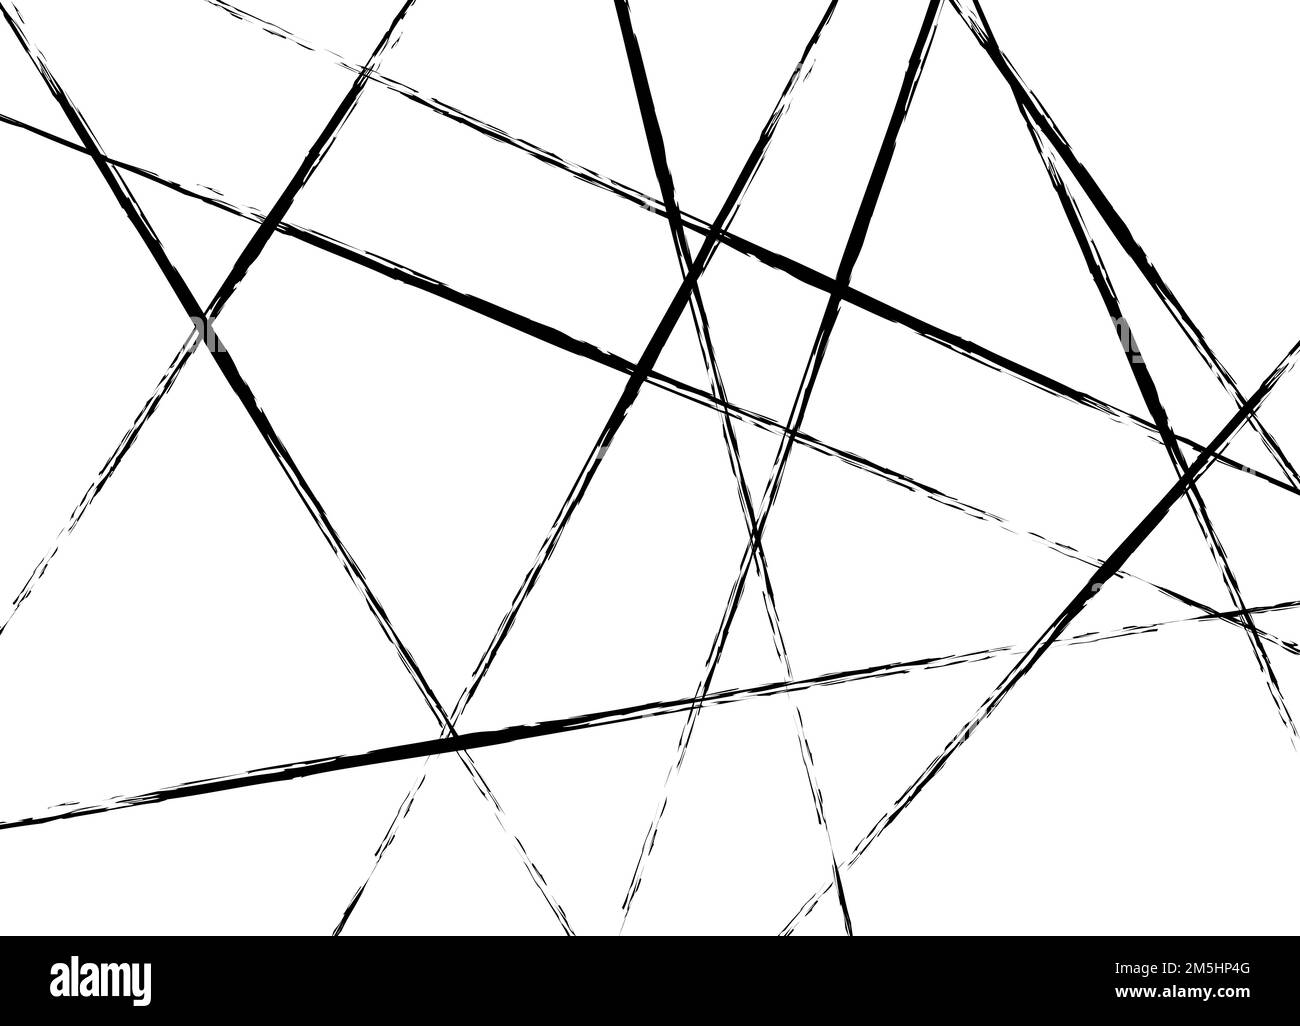 Linee caotiche casuali di design moderno. Motivo nero diretto astratto. Ornamento geometrico per disegni e sfondi. Illustrazione vettoriale. Illustrazione Vettoriale